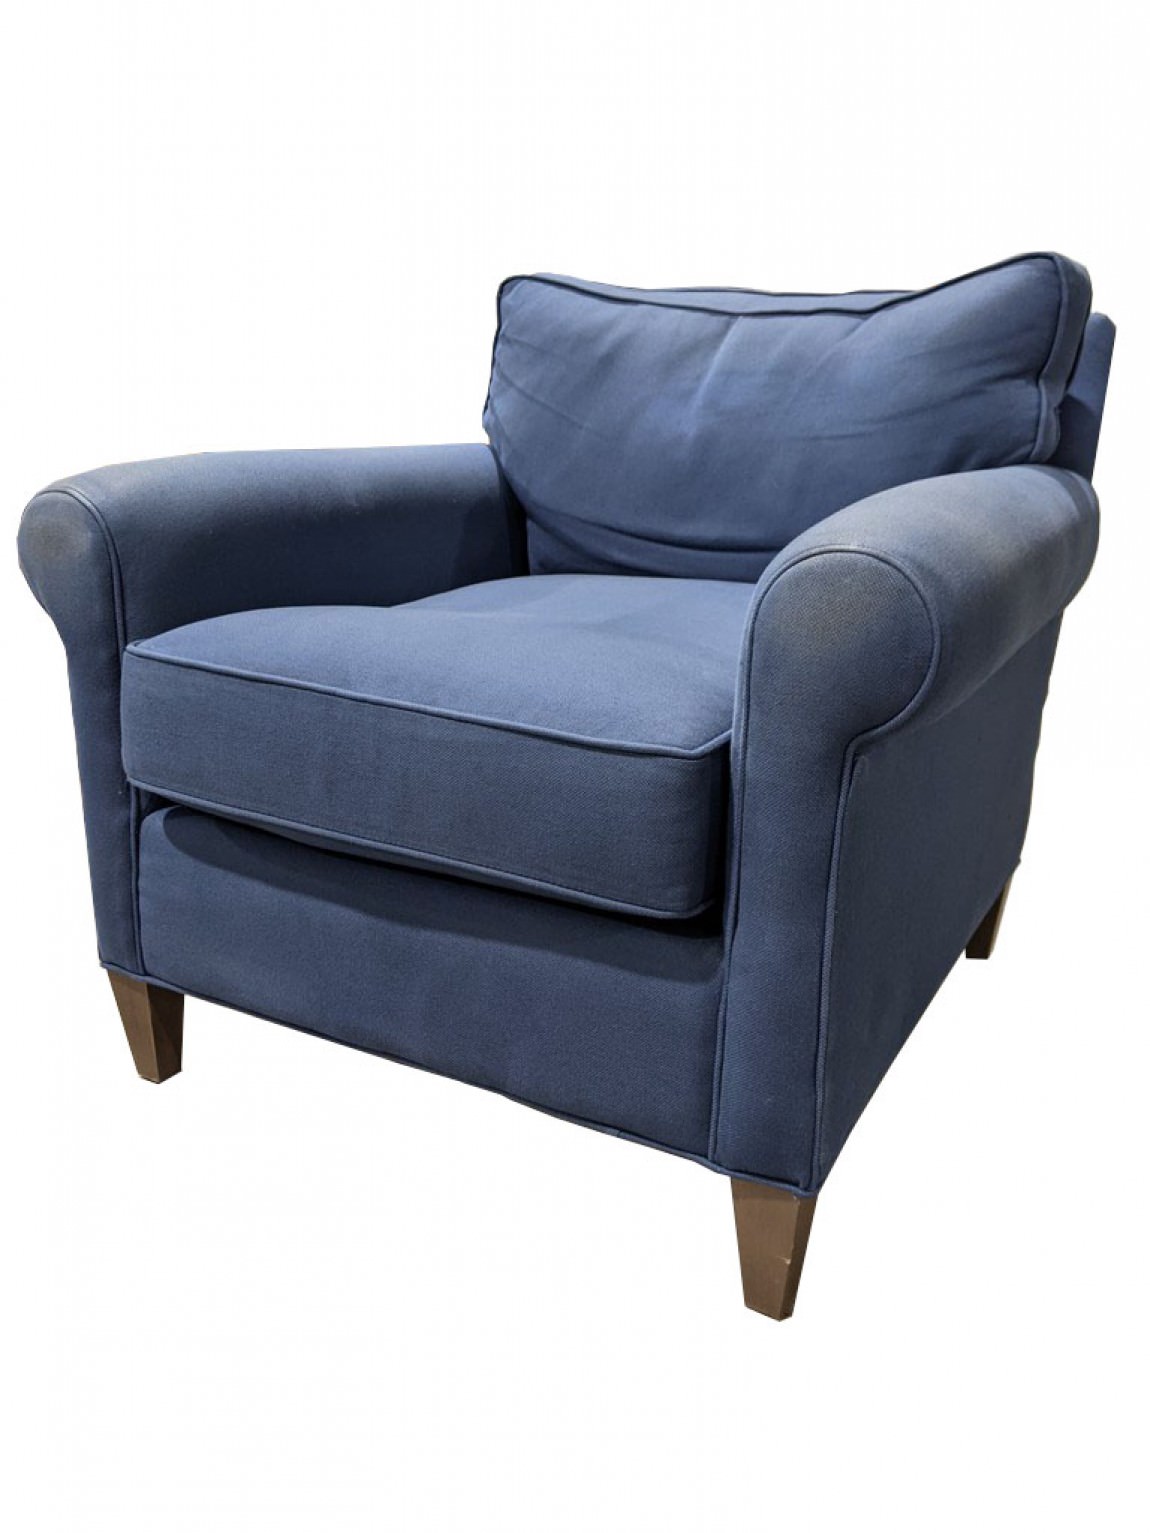 Blue Fabric Club Chair 